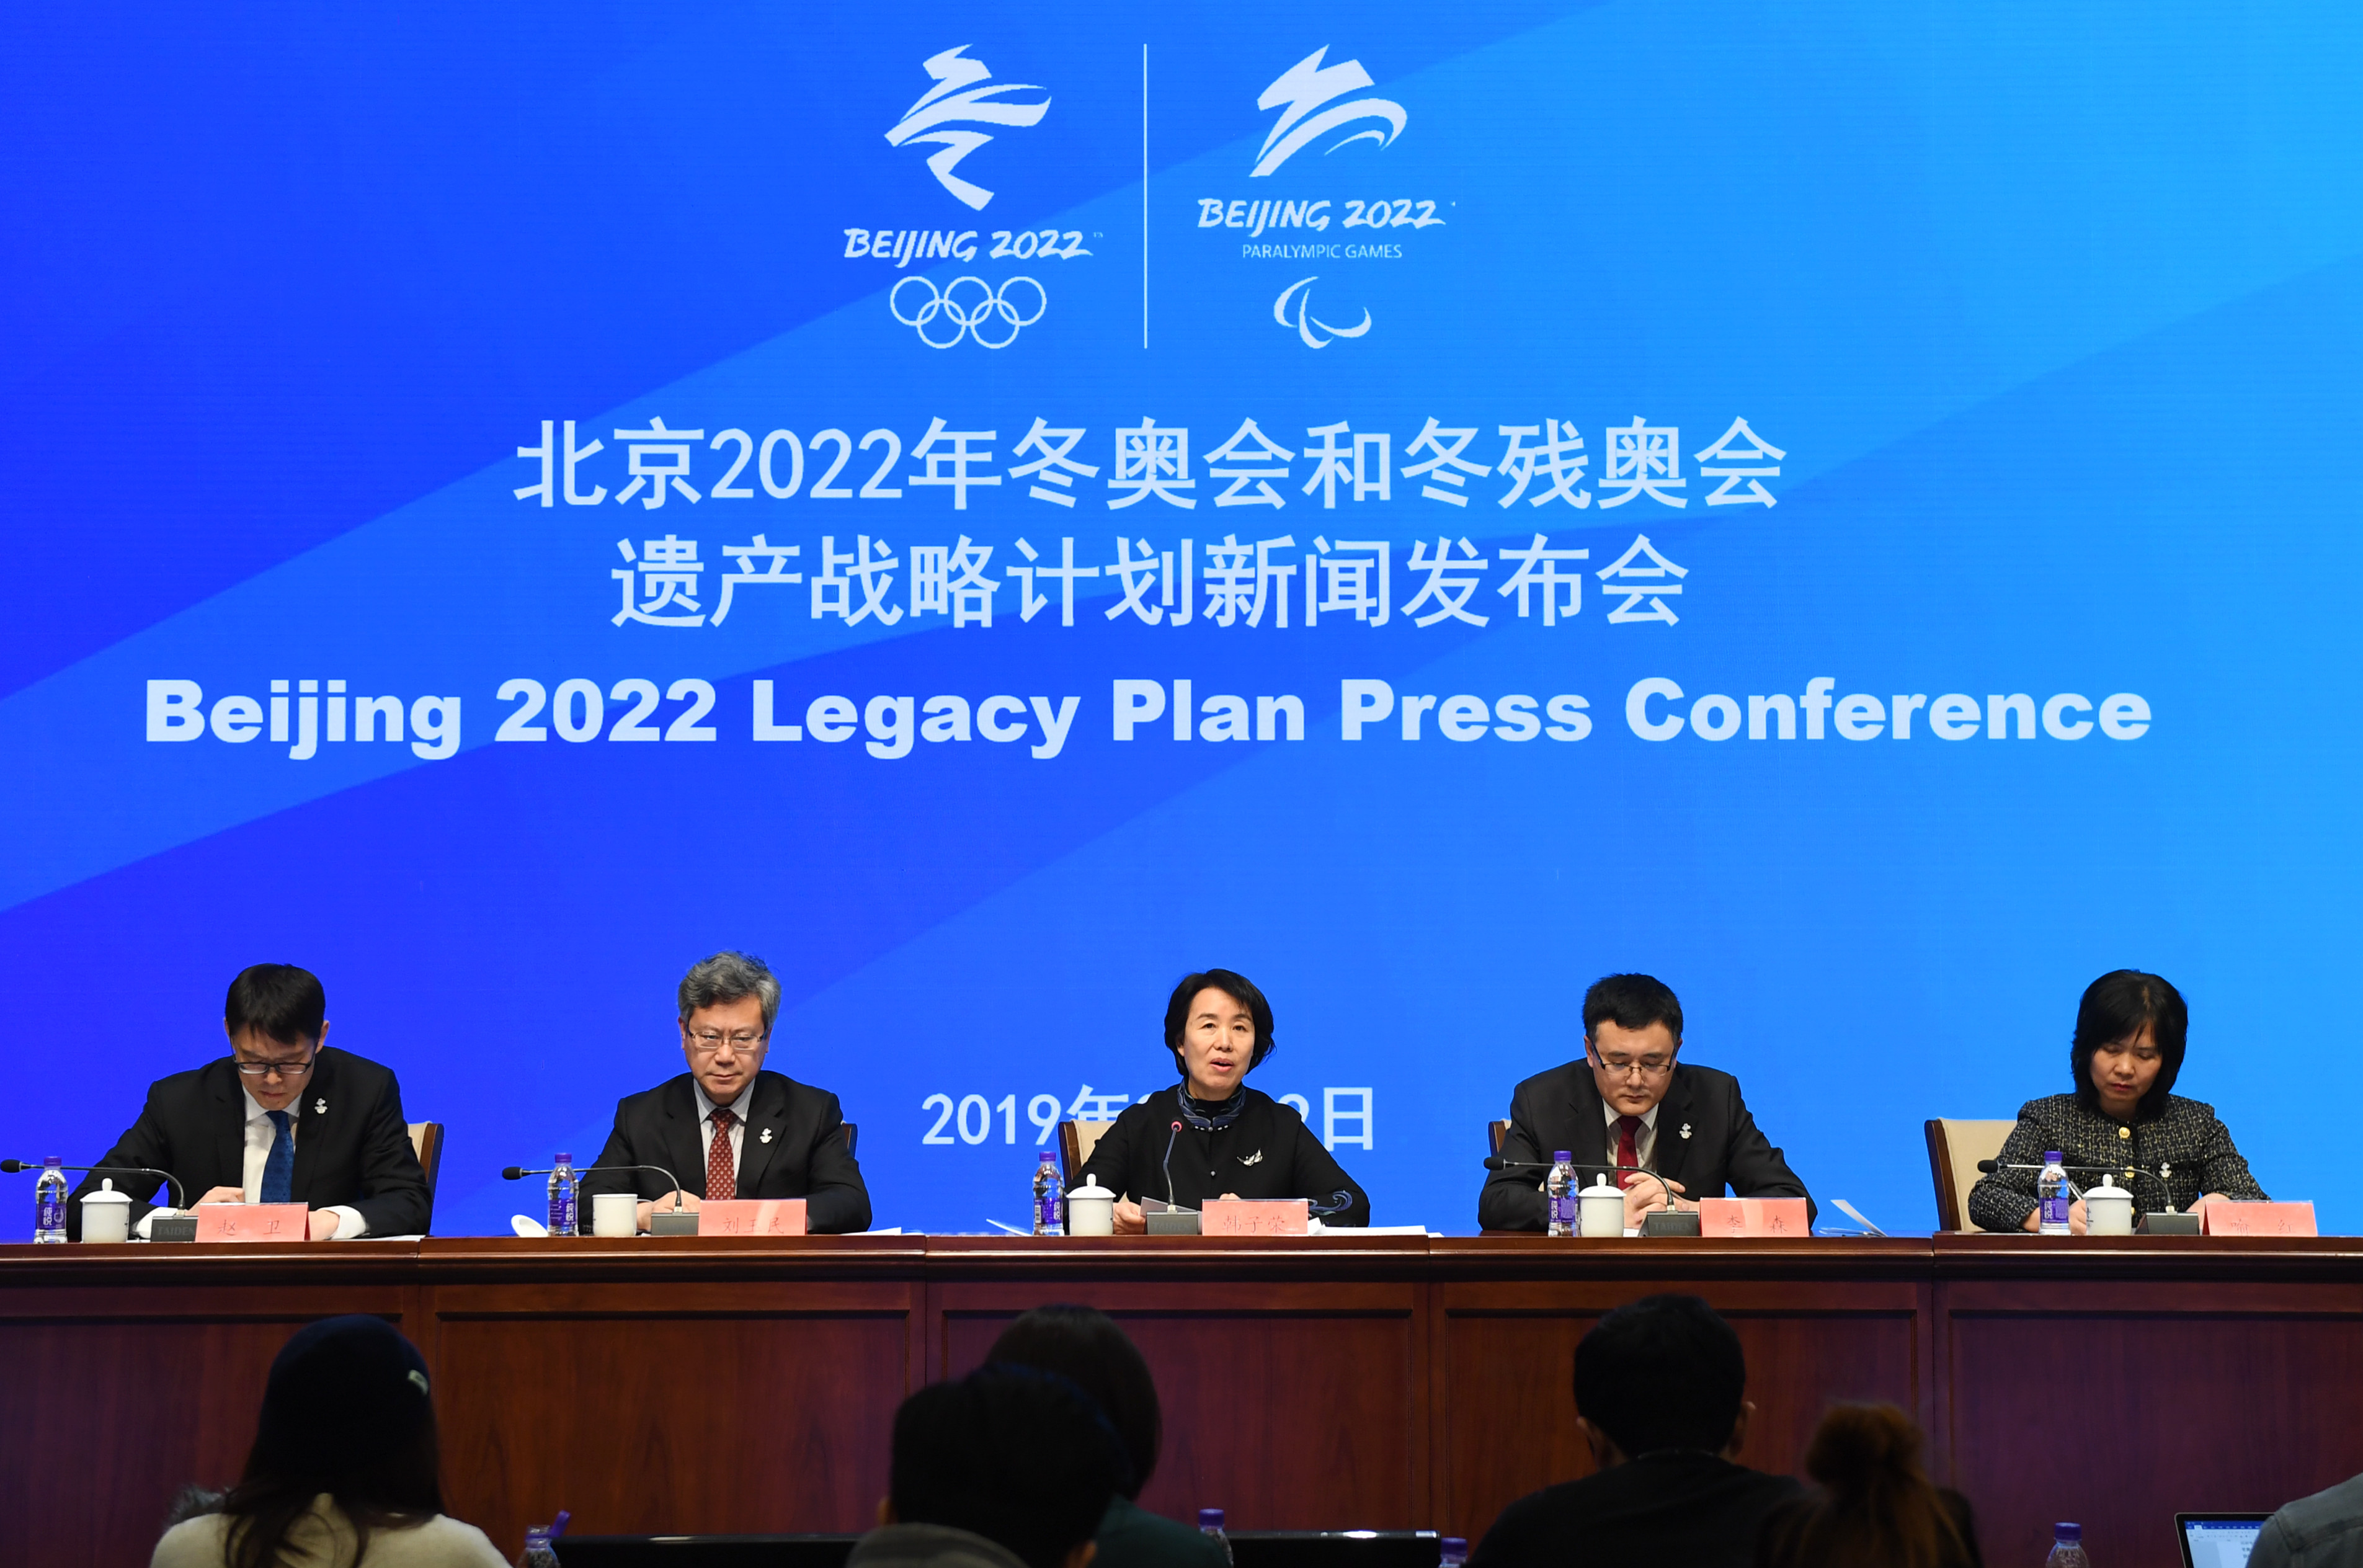 北京2022年冬奥会和冬残奥会遗产战略计划新闻发布会在京举行